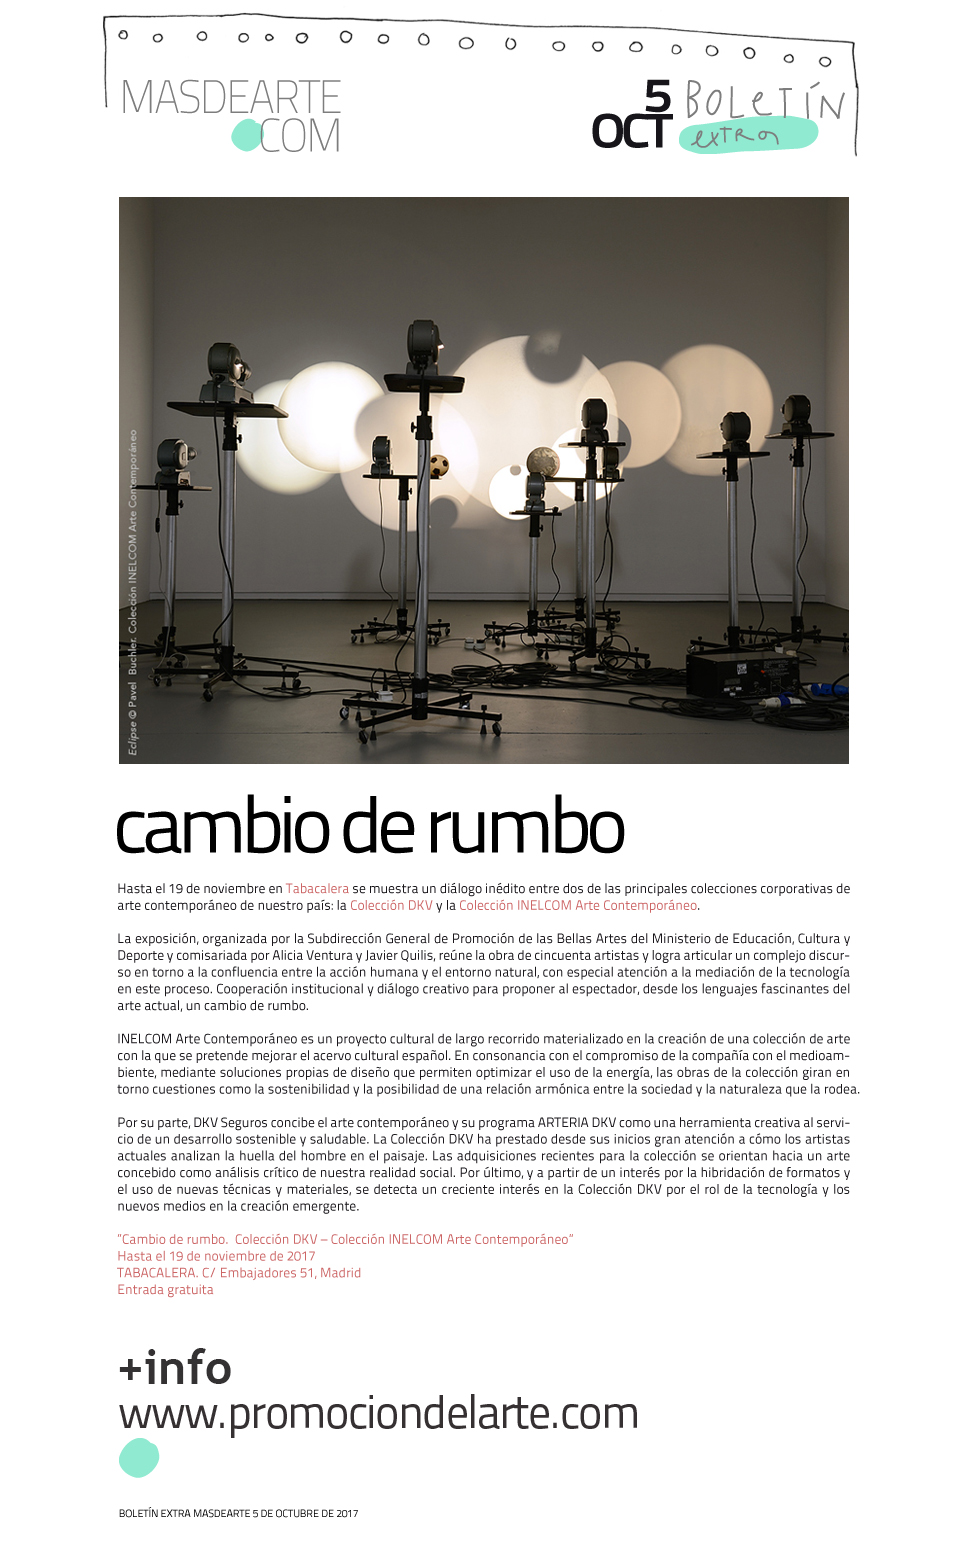 Extra masdearte:
 Cambio de rumbo. Colección DKV - Colección INELCOM en Tabacalera. Hasta el 19 de noviembre de 2017